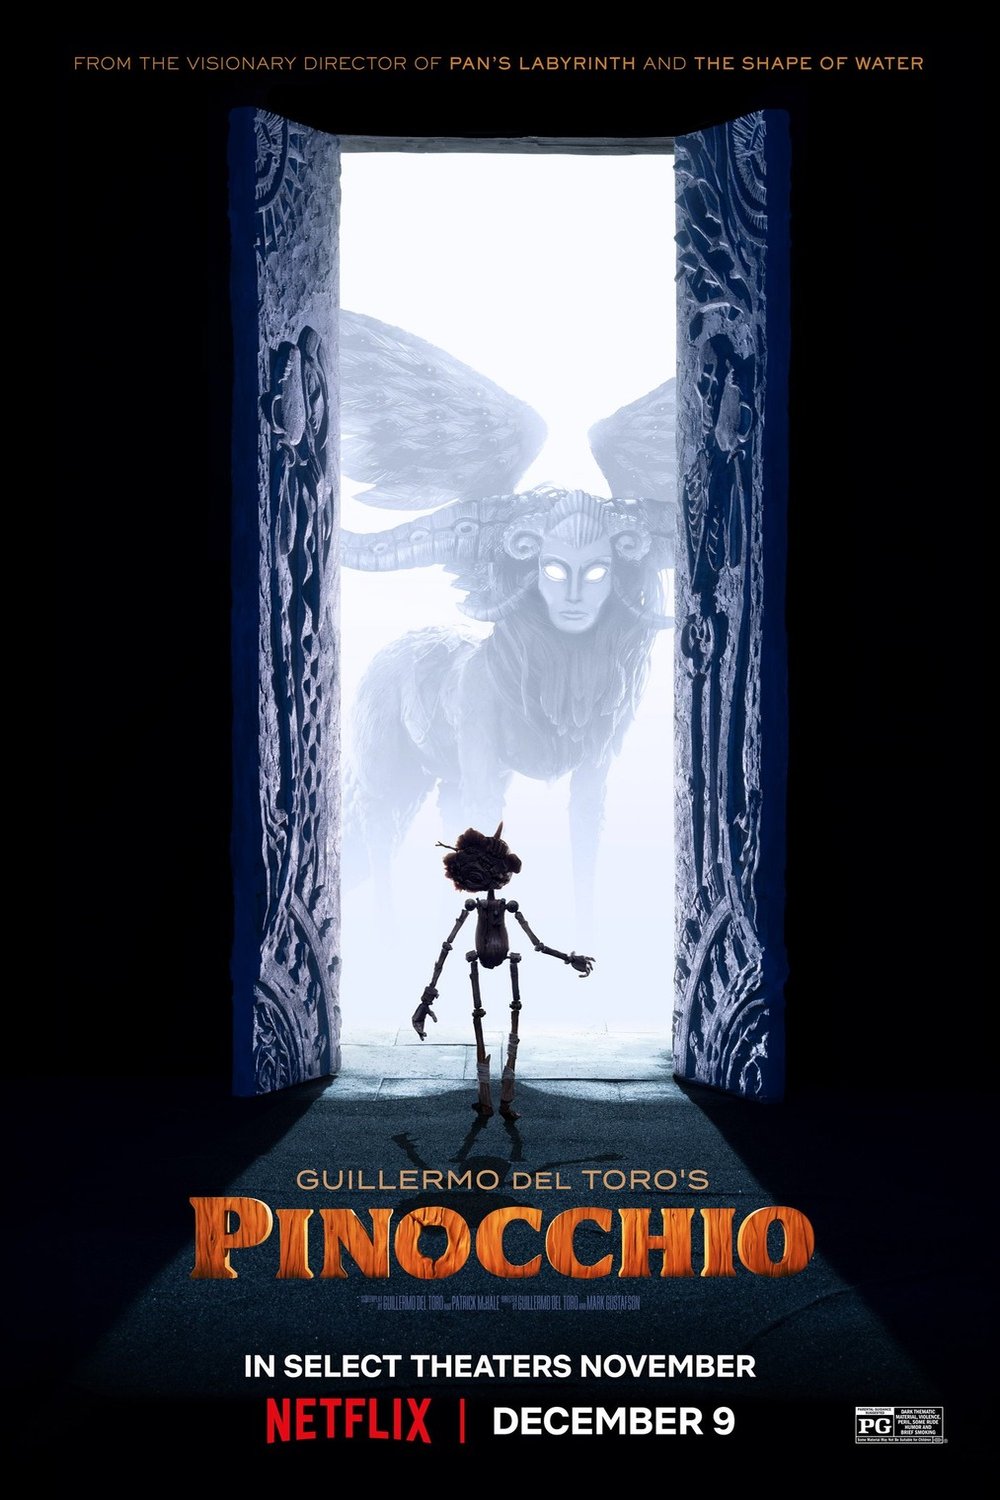 Poster of the movie Guillermo del Toro's Pinocchio